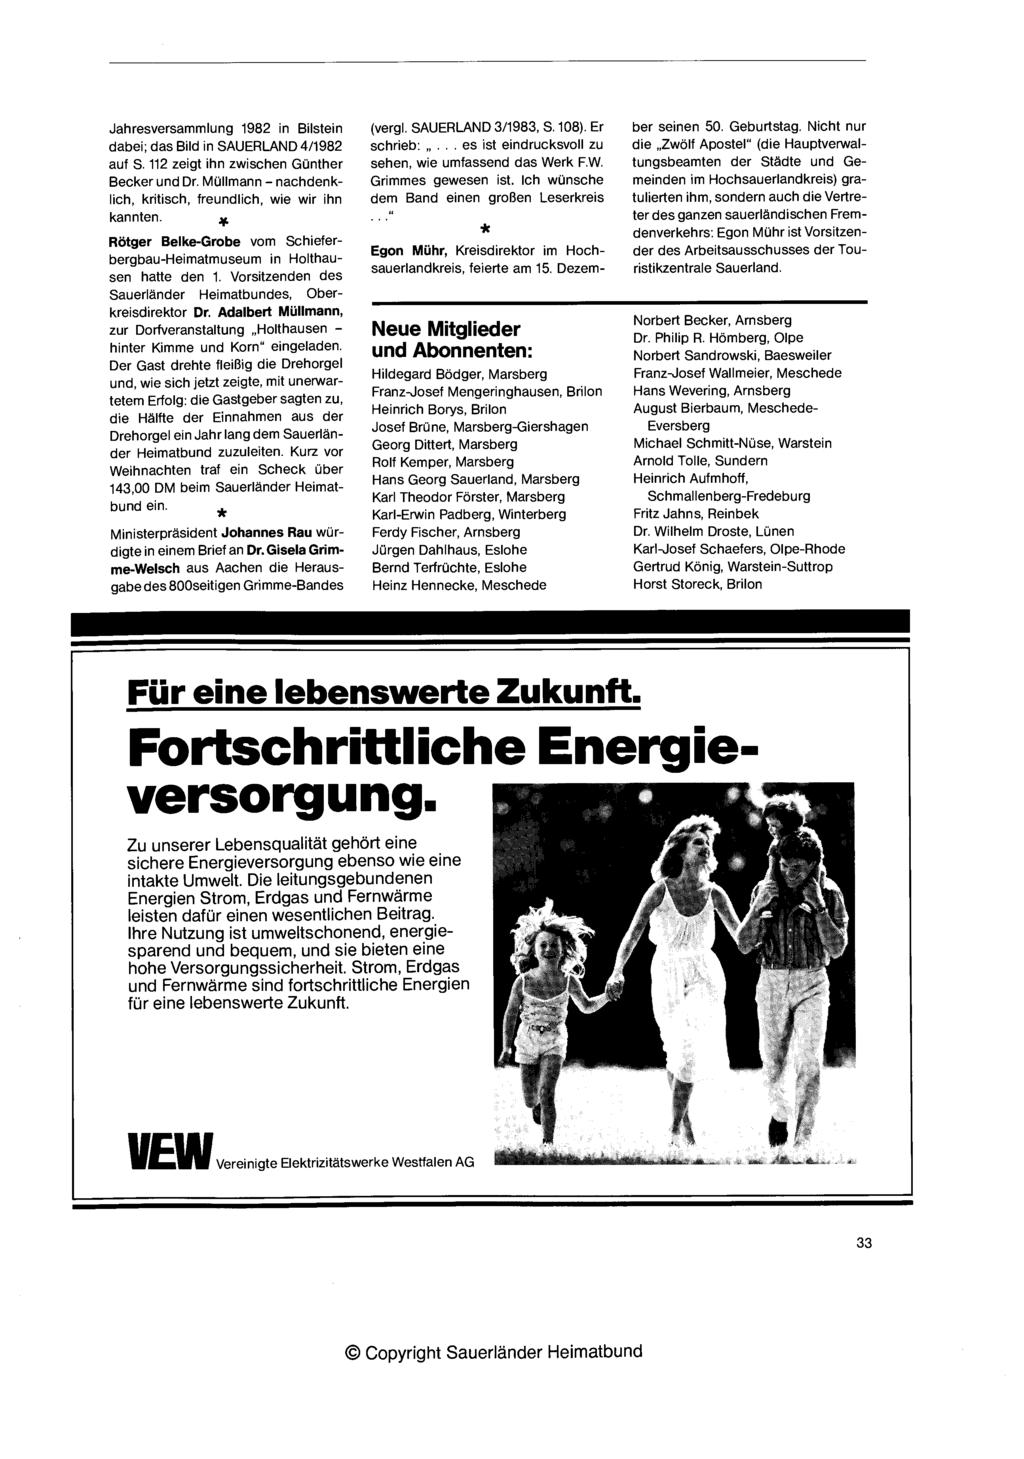 Jahresversammlung 1982 in Bilstein dabei; das Bild in 4/1982 auf S. 112 zeigt ihn zwisclien Gunther Becker und Dr. Mullmann - nachdenklich, kritisch, freundlich, wie wir ilin kannten.